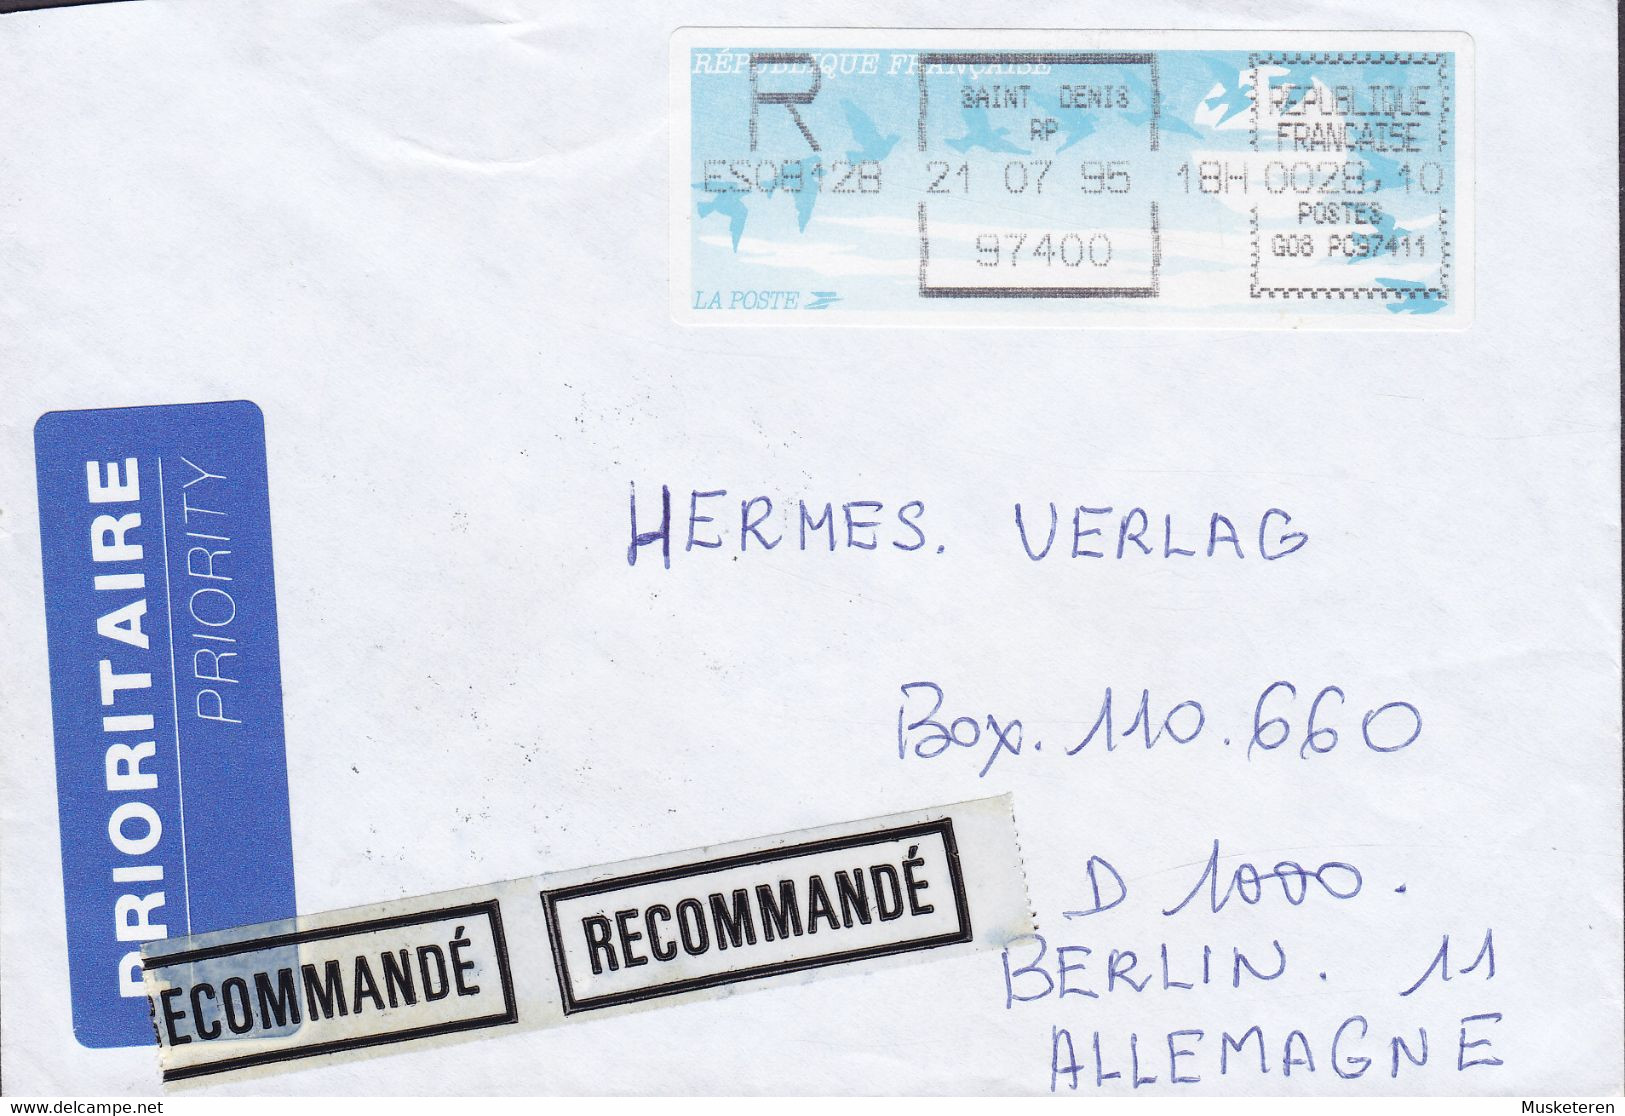 France PRIORITAIRE & Recommandé Labels SAINT DENIS 1995 Cover Lettre BERLIN Germany ATM Frama Label - 1990 Type « Oiseaux De Jubert »